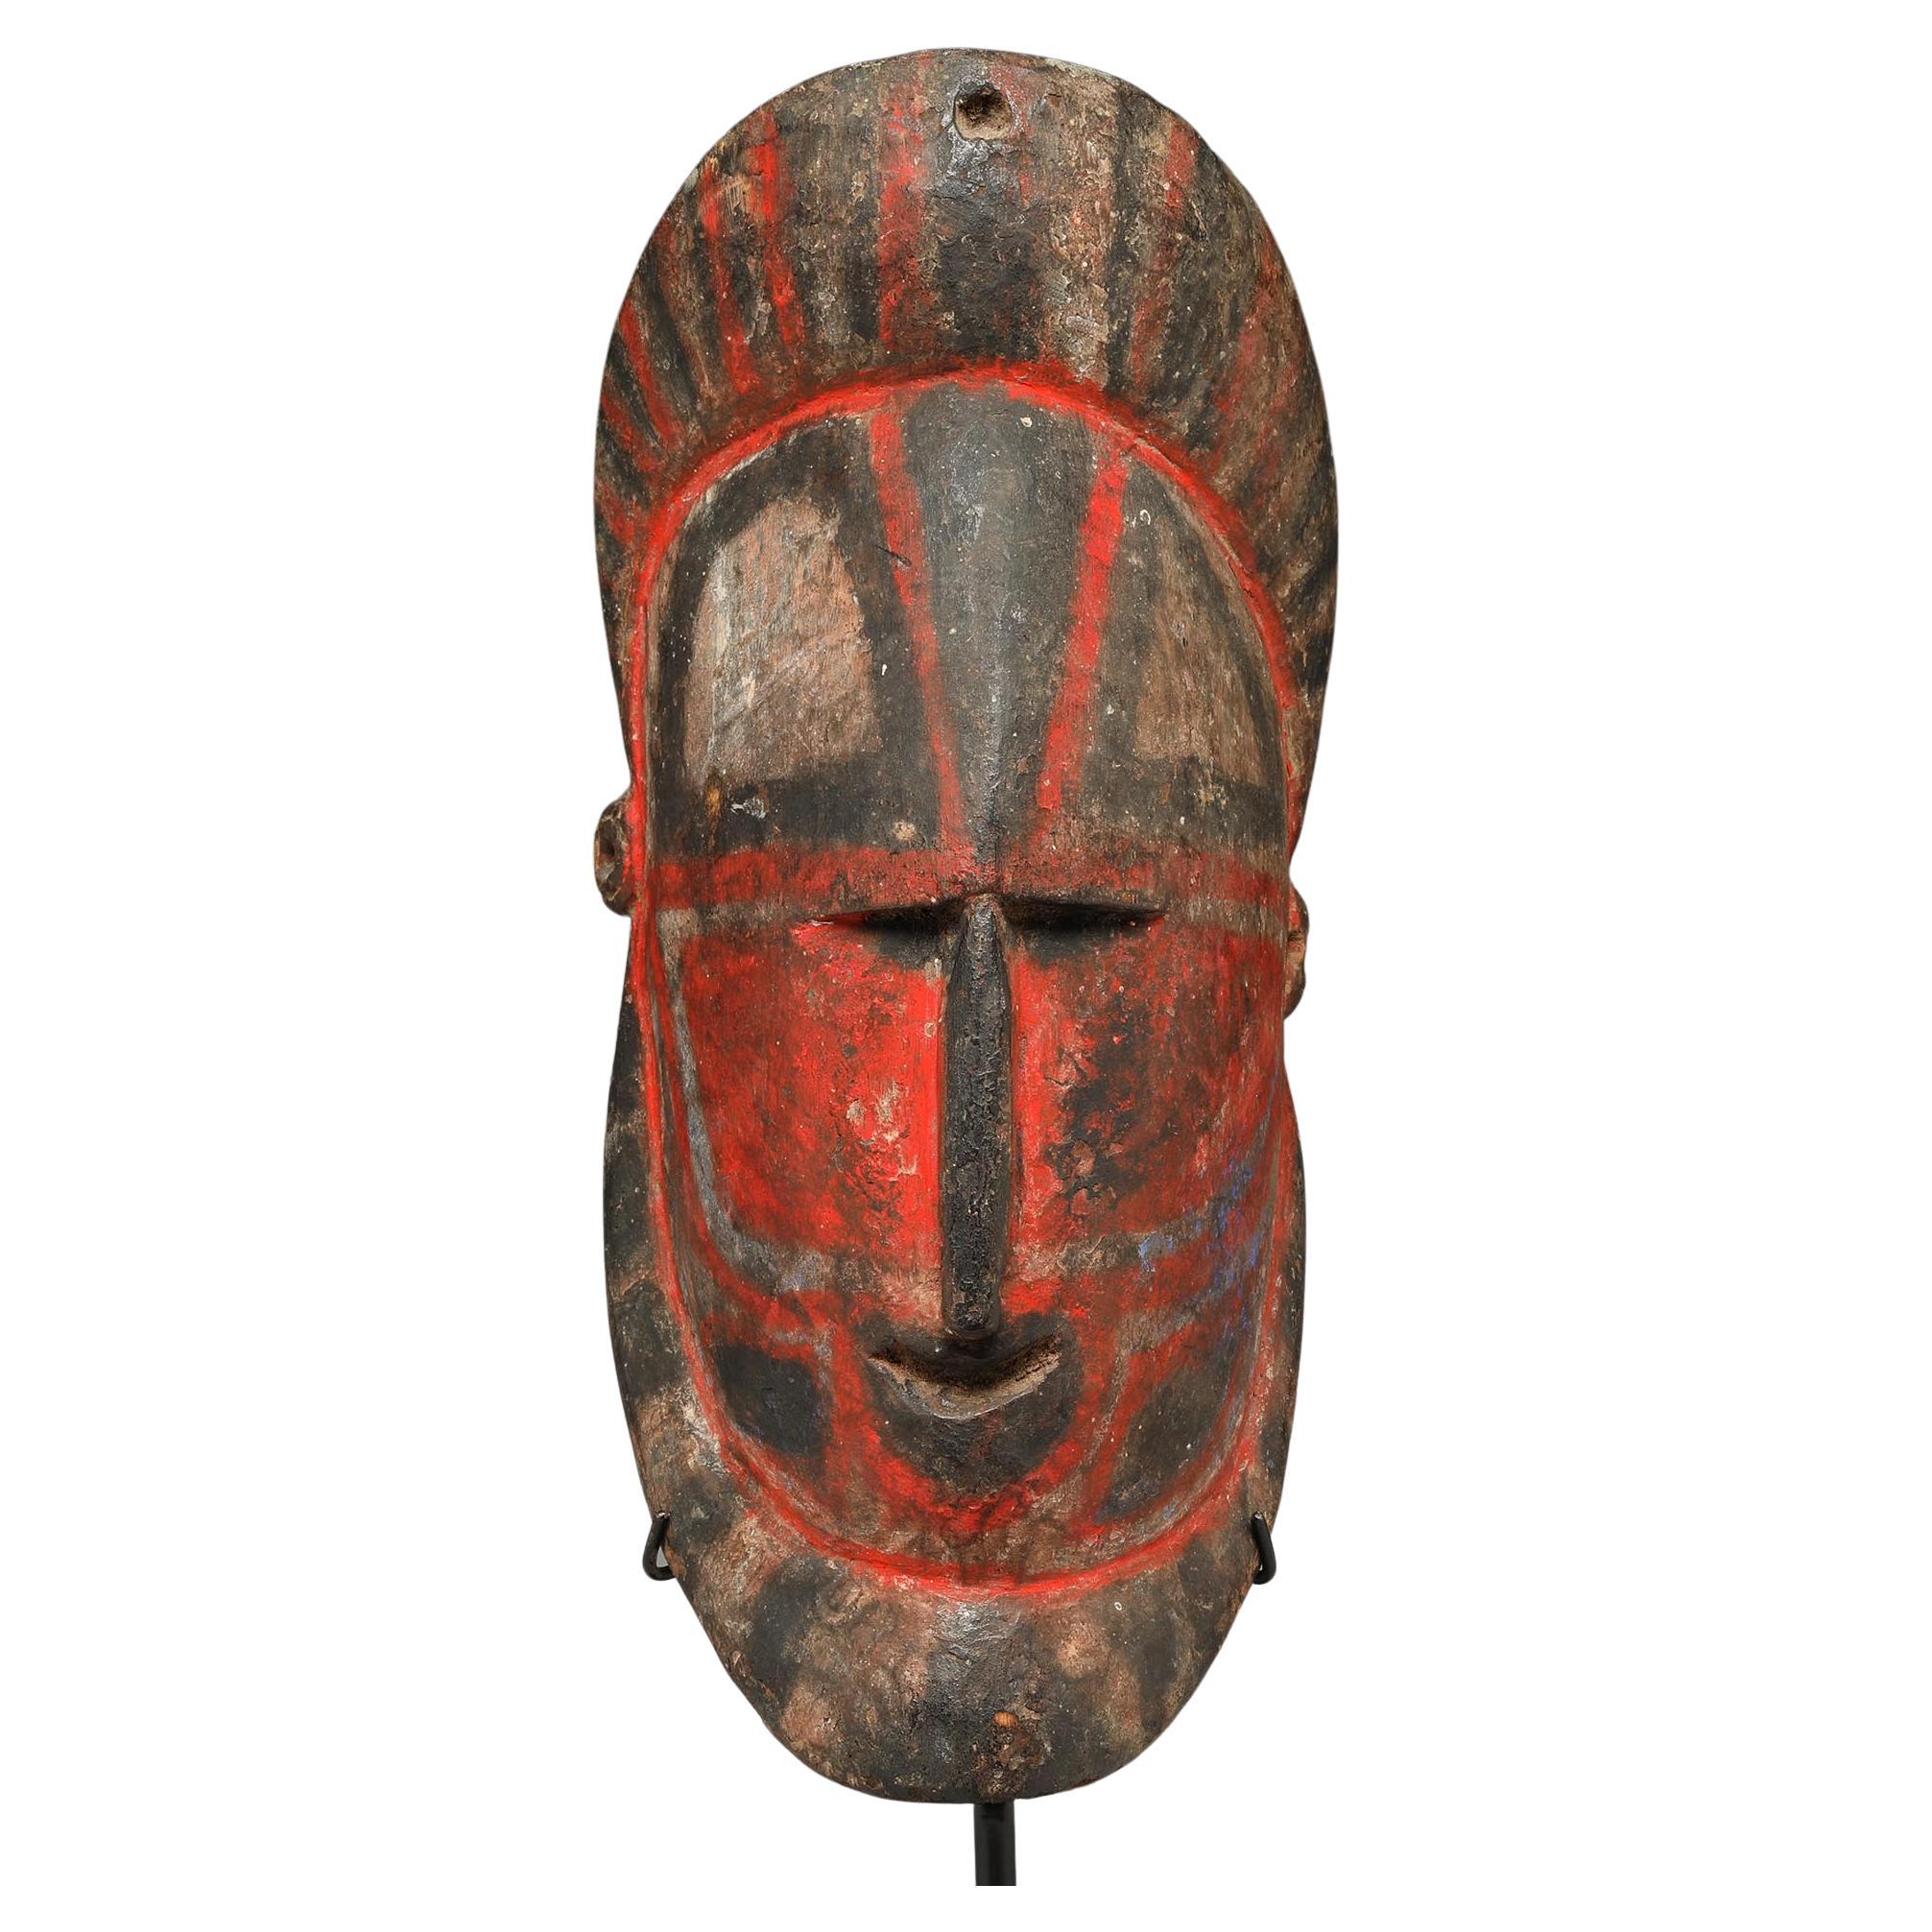 Masque en bois dur de yam rouge et noir Sepik de Papouasie-Nouvelle-Guinée